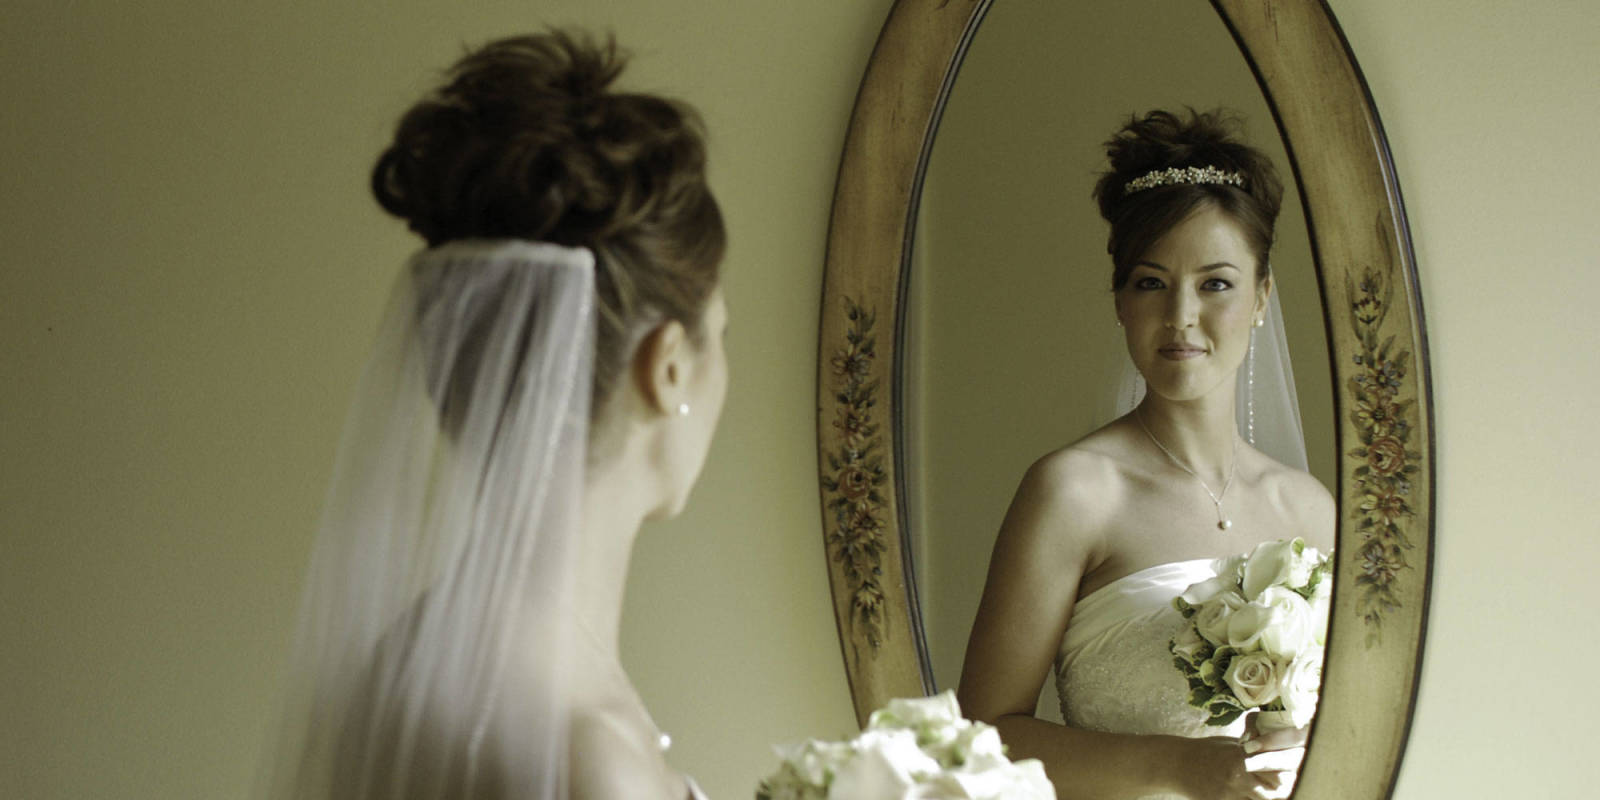 Нельзя видеть невесту. Невеста у зеркала. Невеста перед зеркалом. Невеста возле зеркала. Свадьба в отражении.